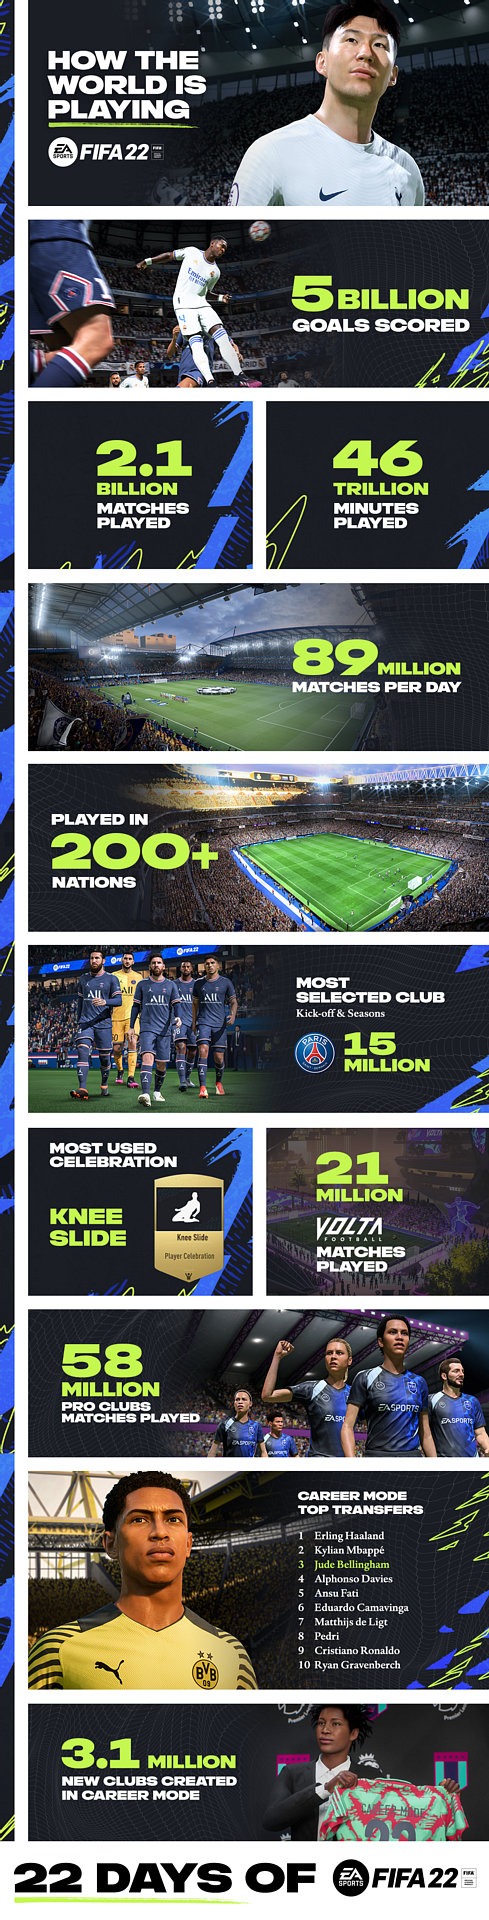 画像集#002のサムネイル/「FIFA 22」，“発売22日目”を記念して全世界のプレイデータを公開。200か国以上で1日あたり平均8900回，累計21億回におよぶ試合数に